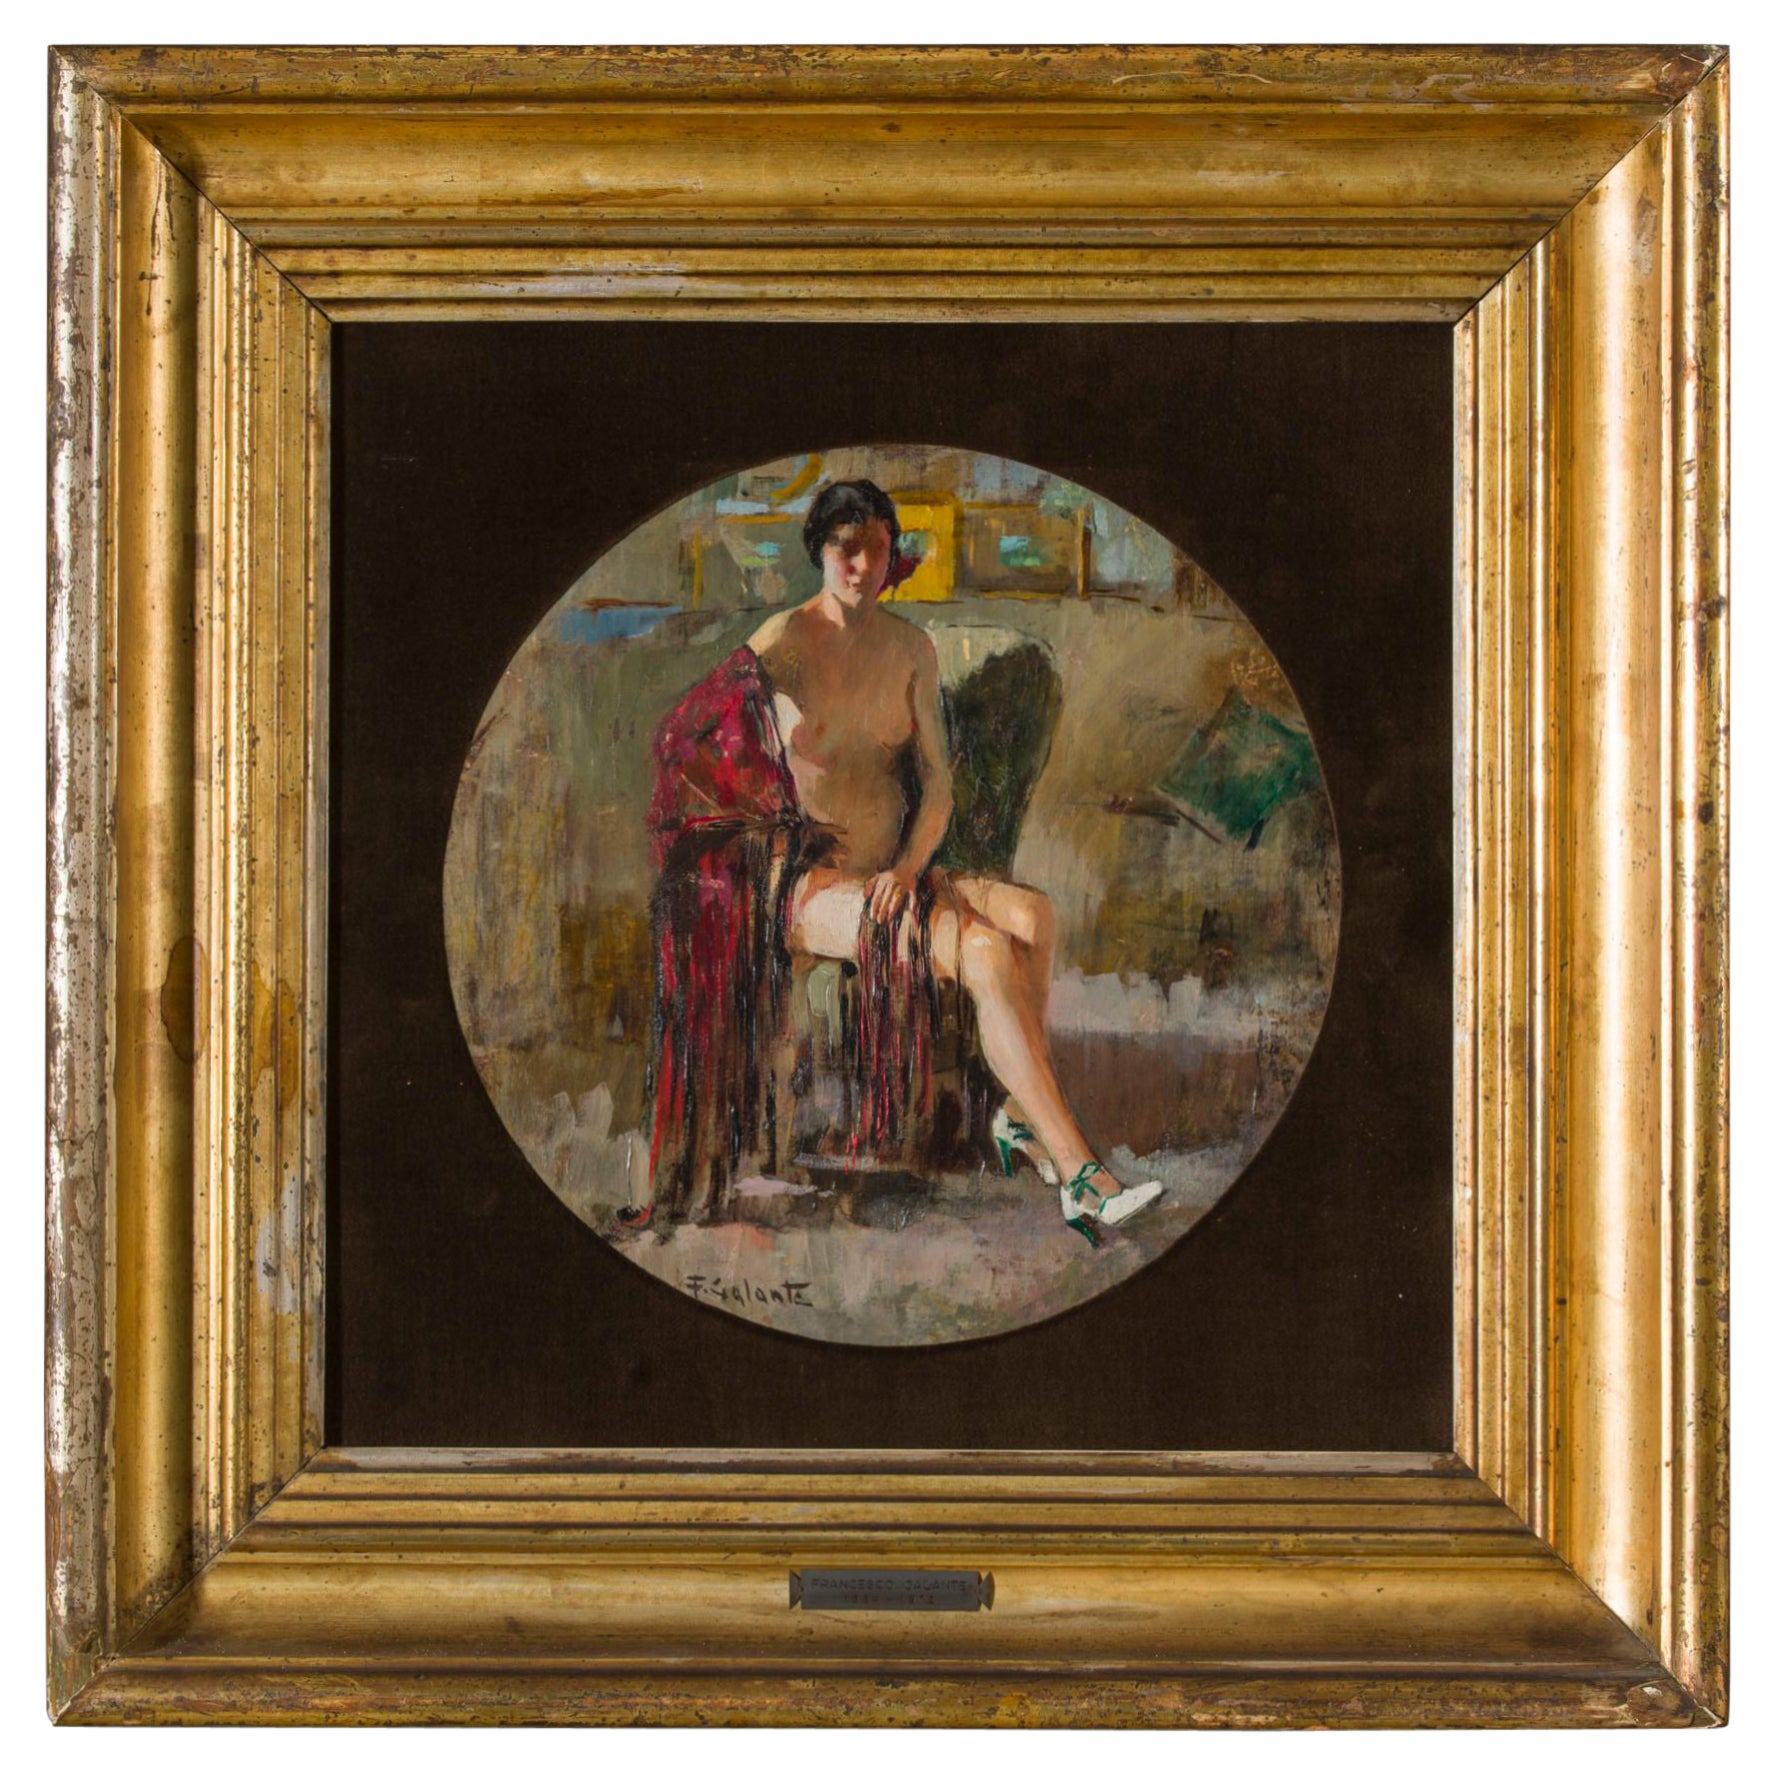 Francesco Galante peint un nu de femme des années 1930 en vente